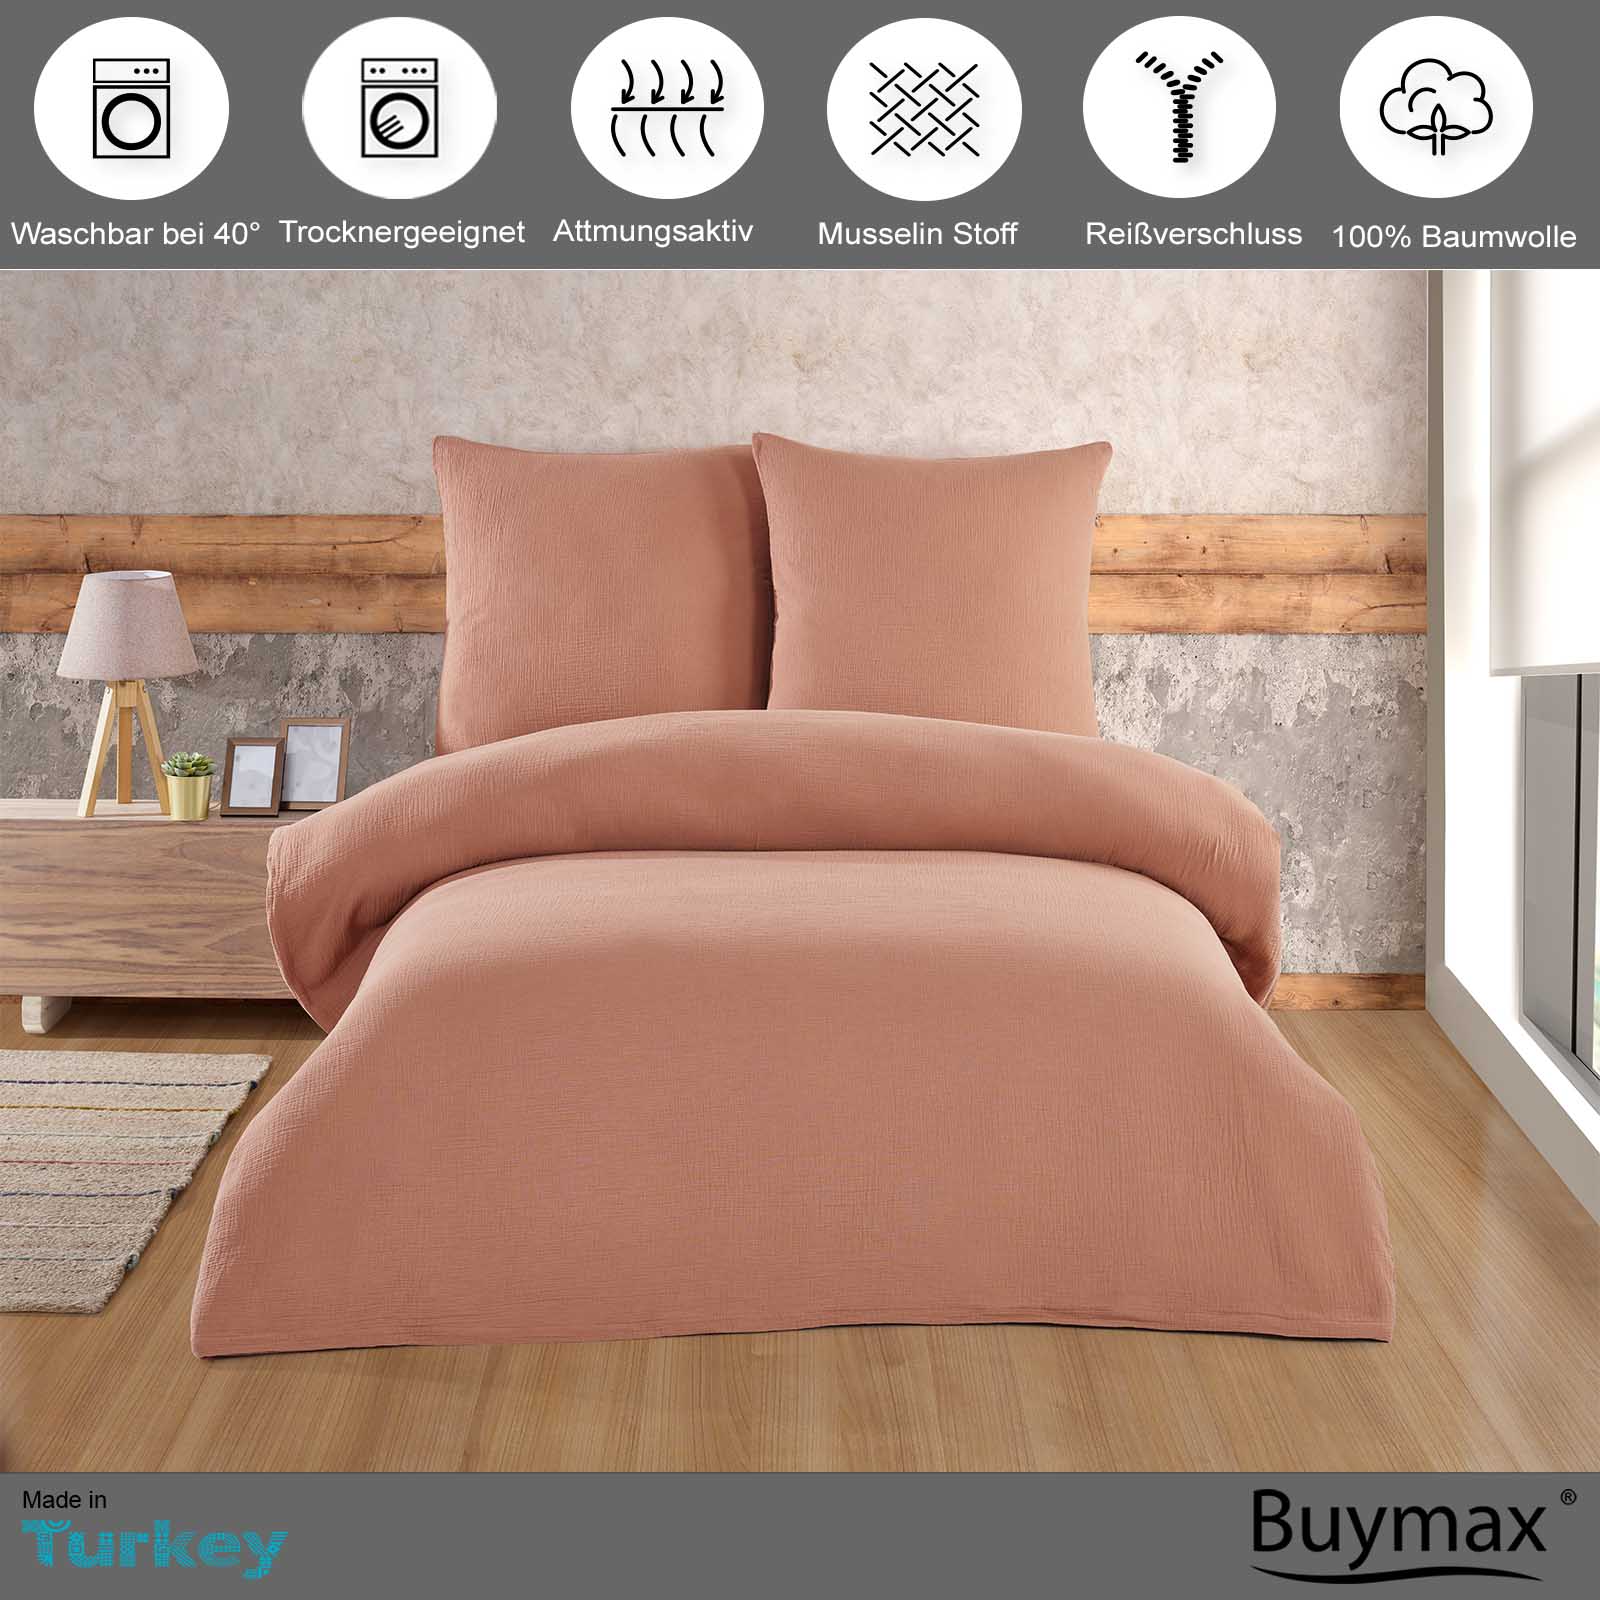 Buymax® Musselin Bettwäsche Set aus Baumwolle, Beige, 200x220 cm